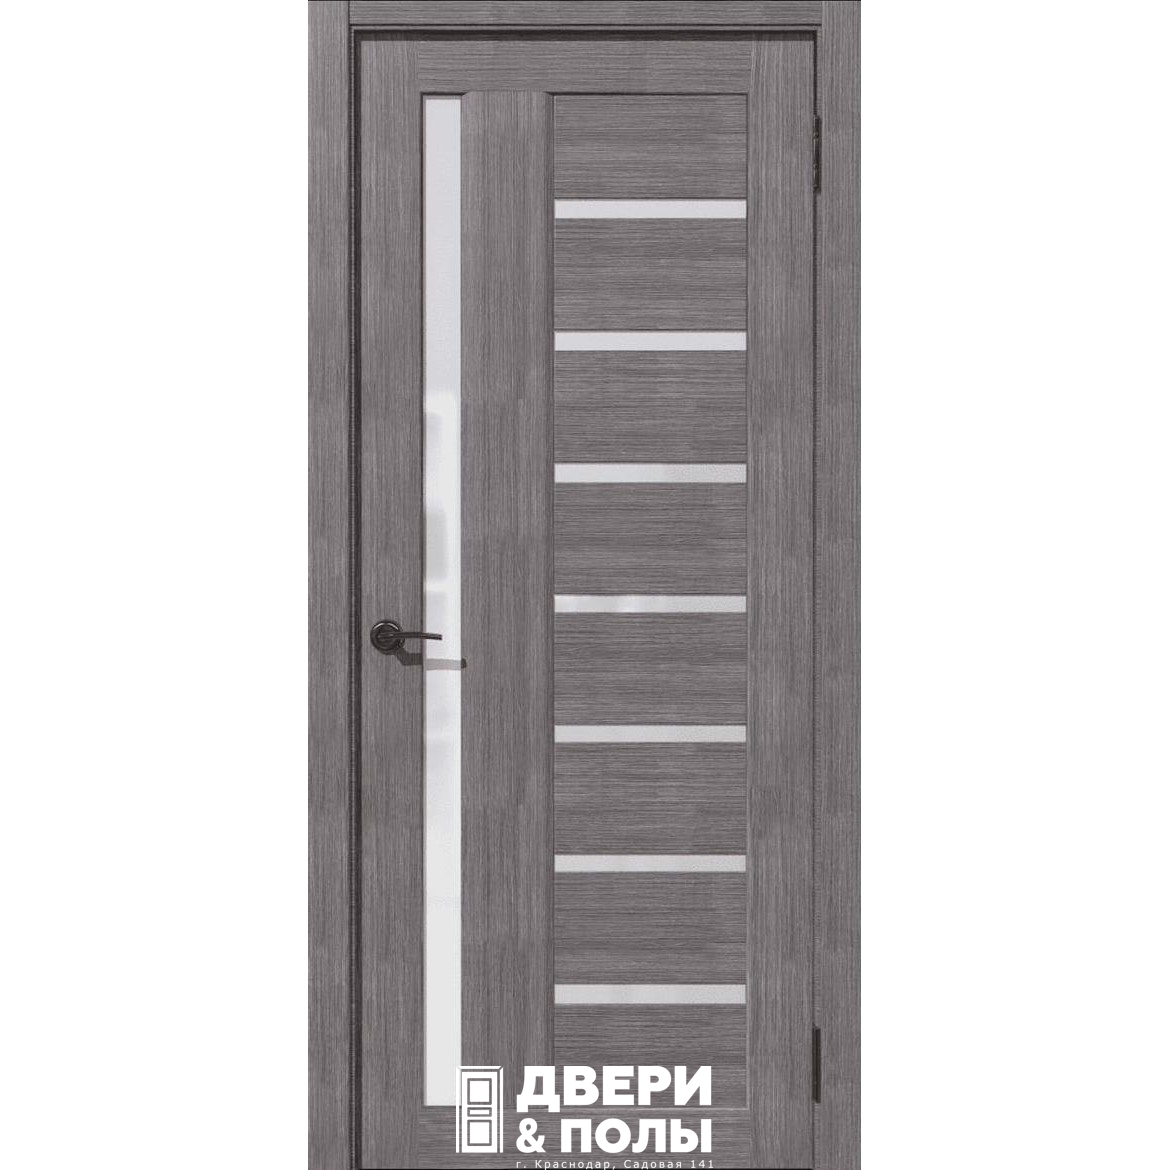 Дубрава Сибирь межкомнатные двери